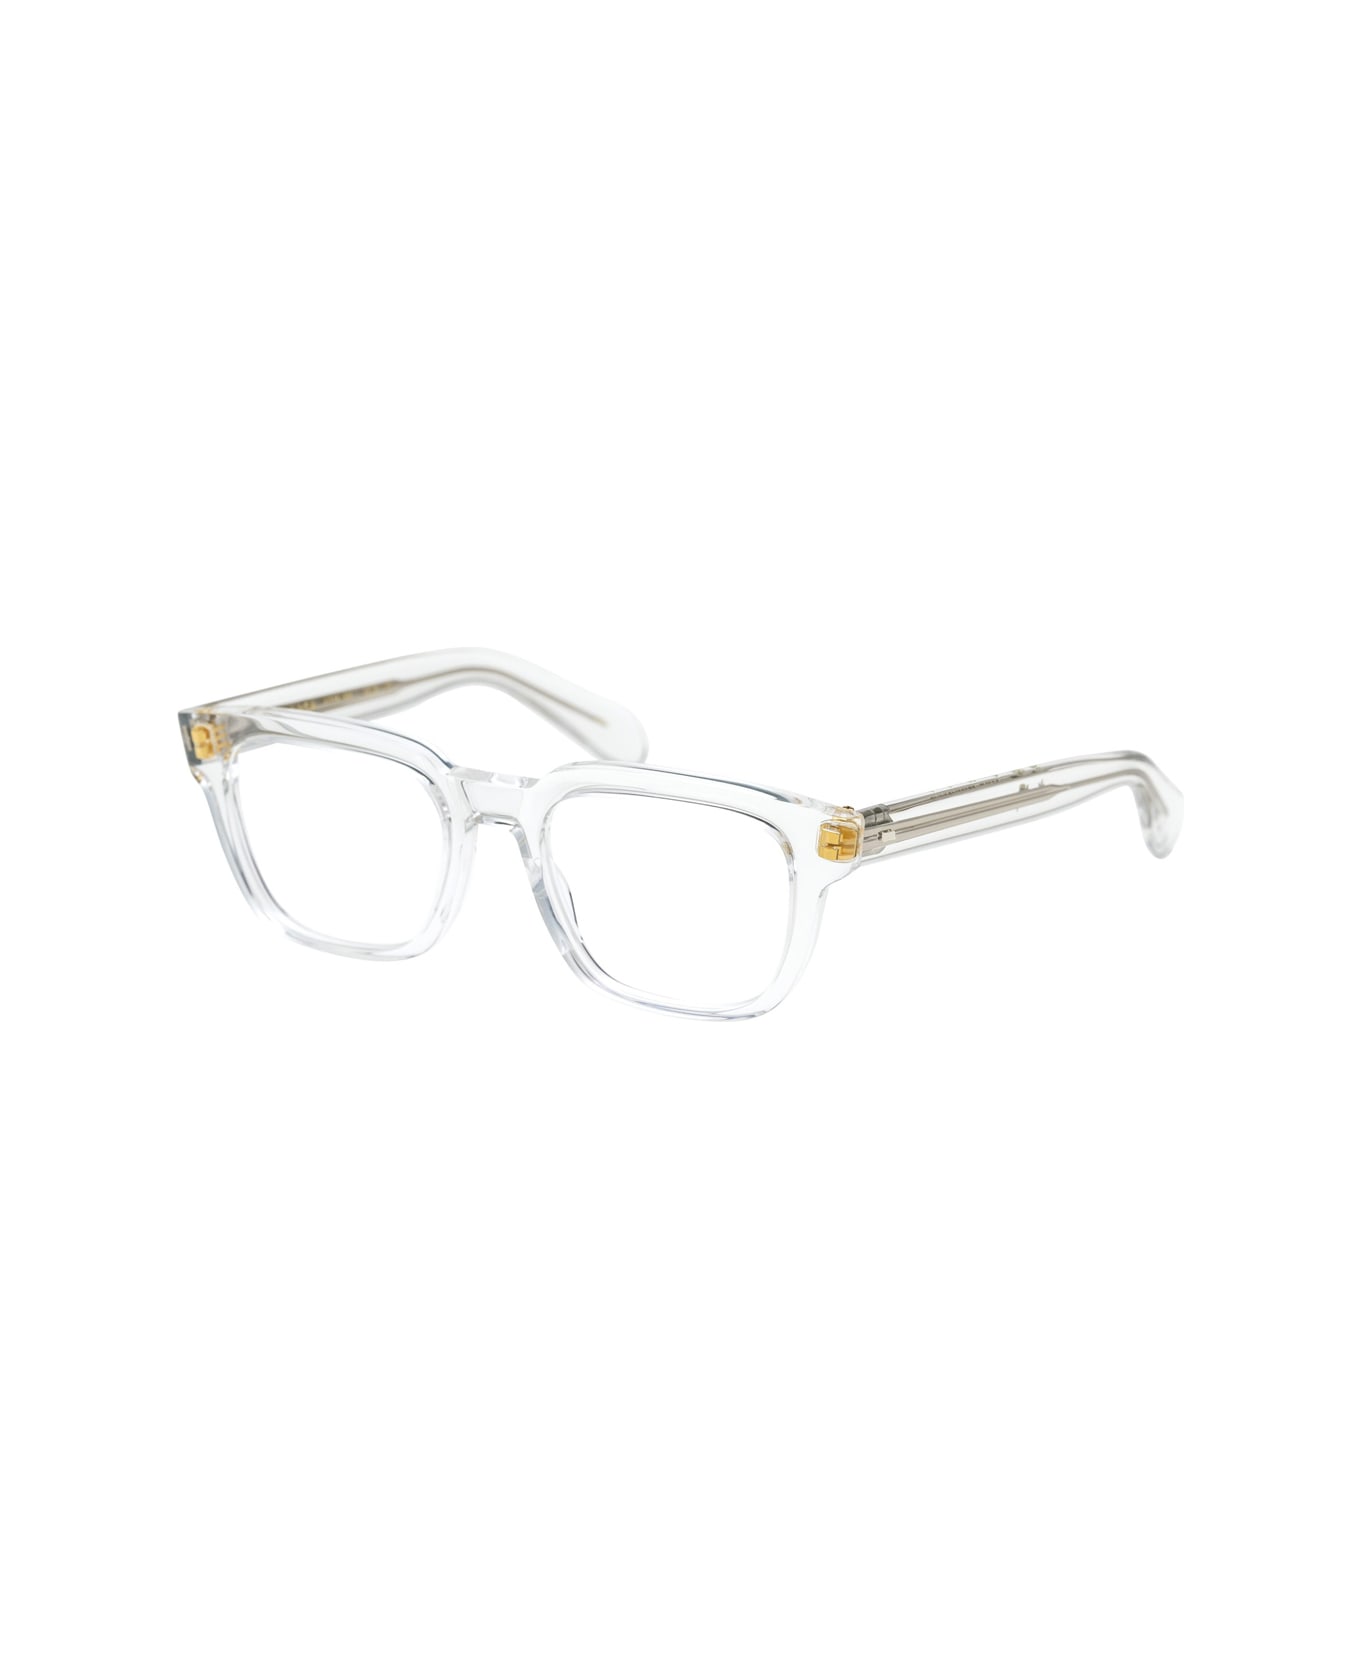 Masunaga Kk 100 40 Glasses - Trasparente アイウェア